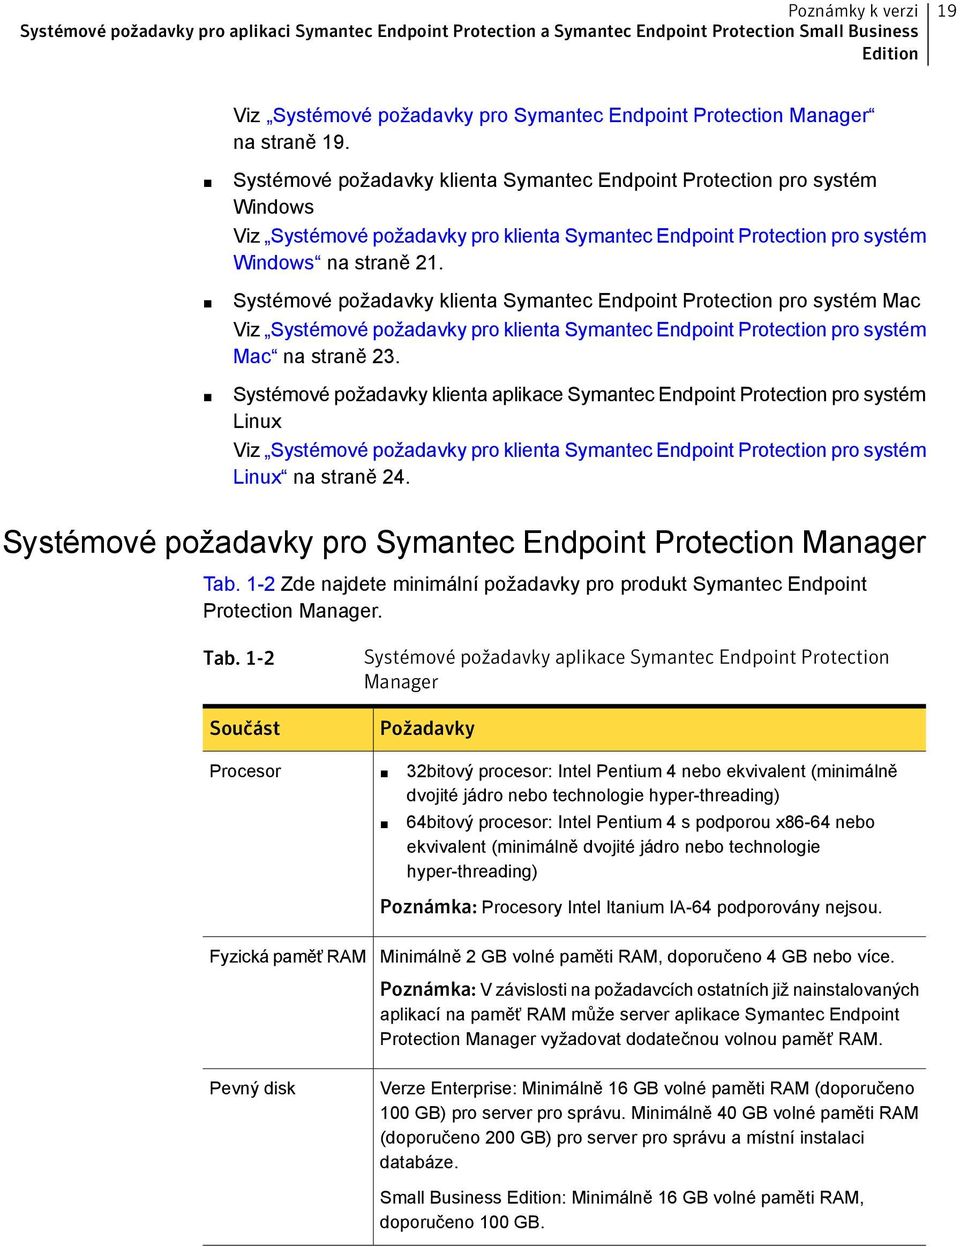 Systémové požadavky klienta Symantec Endpoint Protection pro systém Mac Viz Systémové požadavky pro klienta Symantec Endpoint Protection pro systém Mac na straně 23.